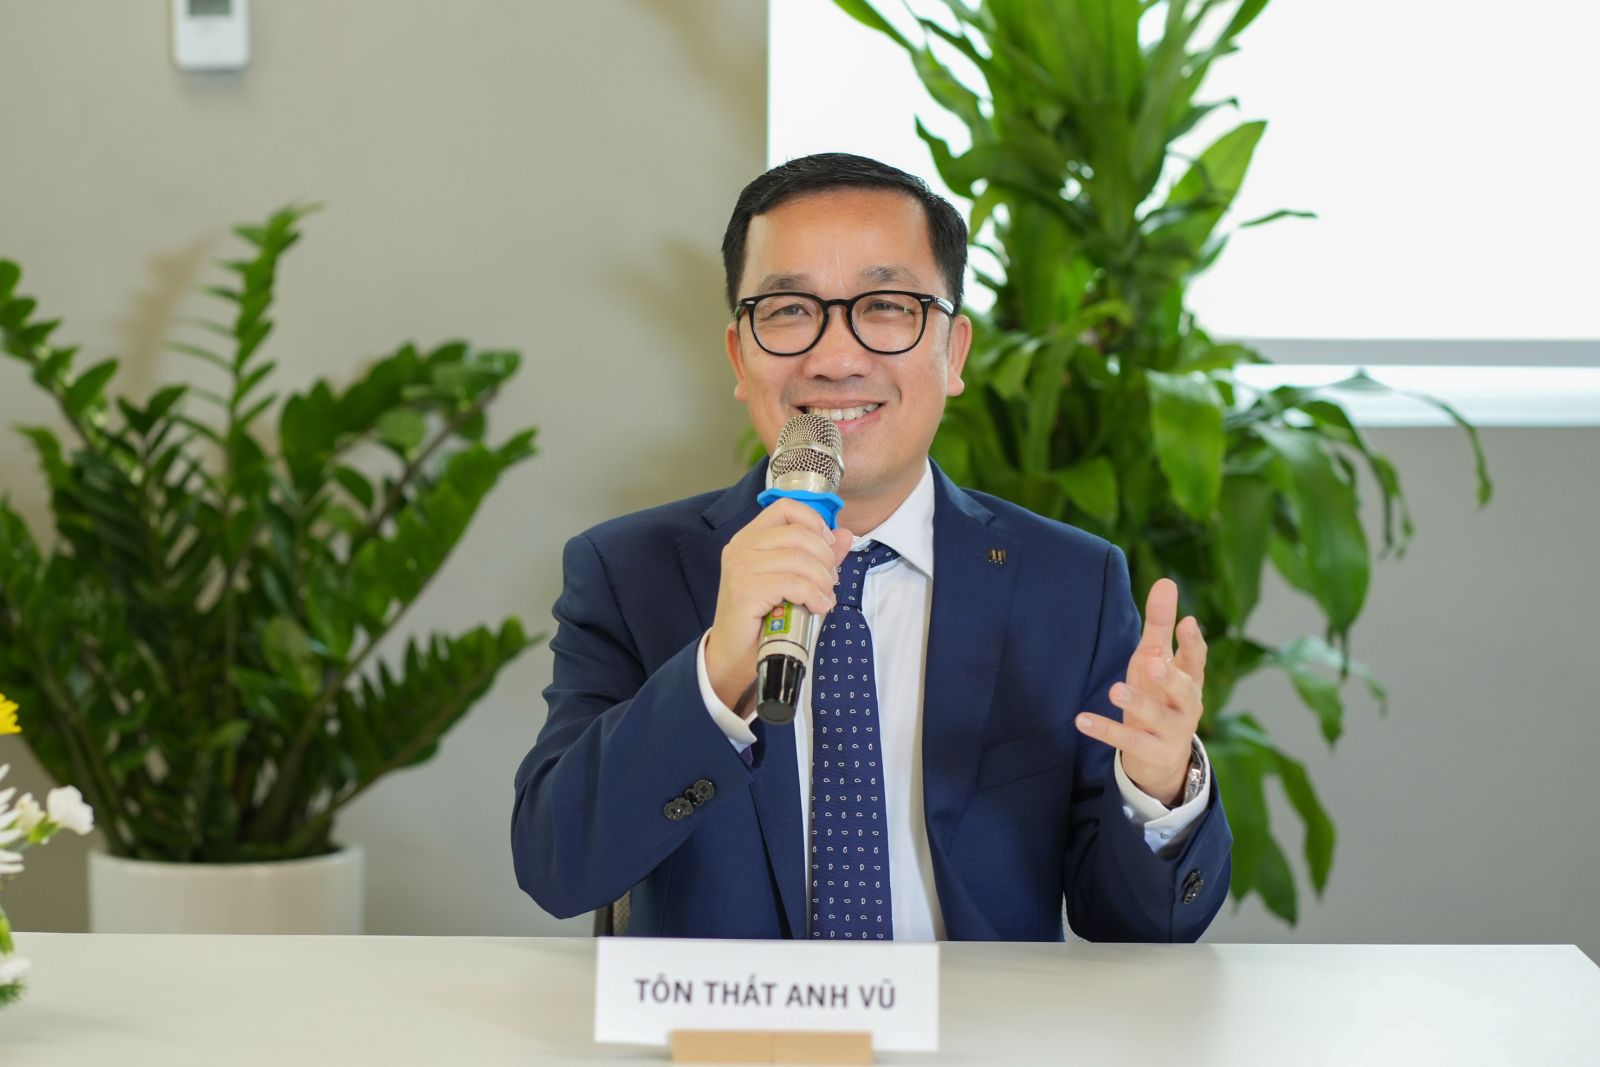 Ông Tôn Thất Anh Vũ, Giám đốc Nhân sự & Đối ngoại Manulife Việt Nam phát biểu về giải pháp mới cho khách hàng